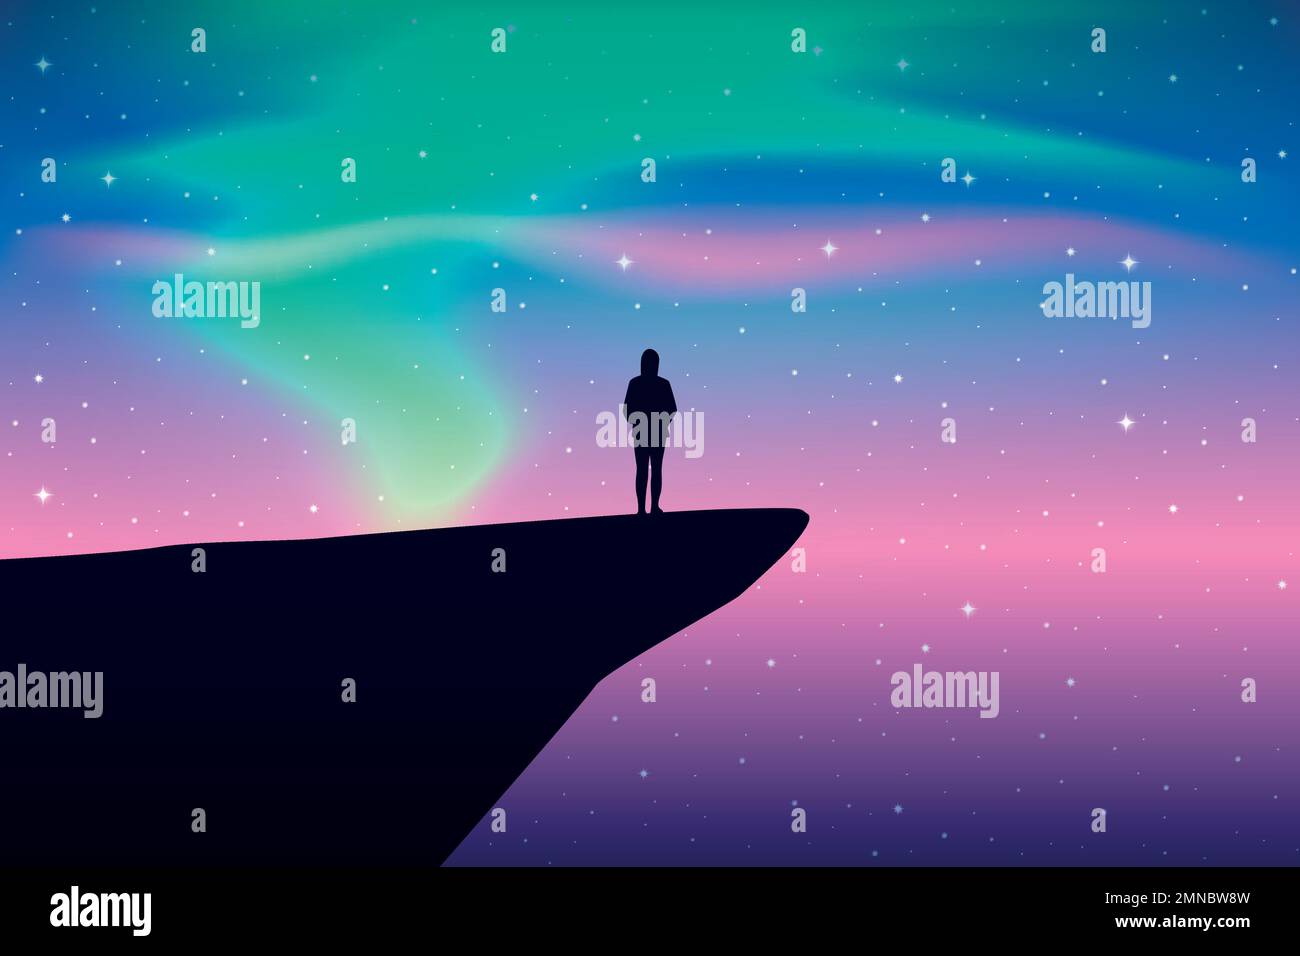 fille sur une falaise regarde dans le ciel étoilé coloré avec aurora borealis Illustration de Vecteur